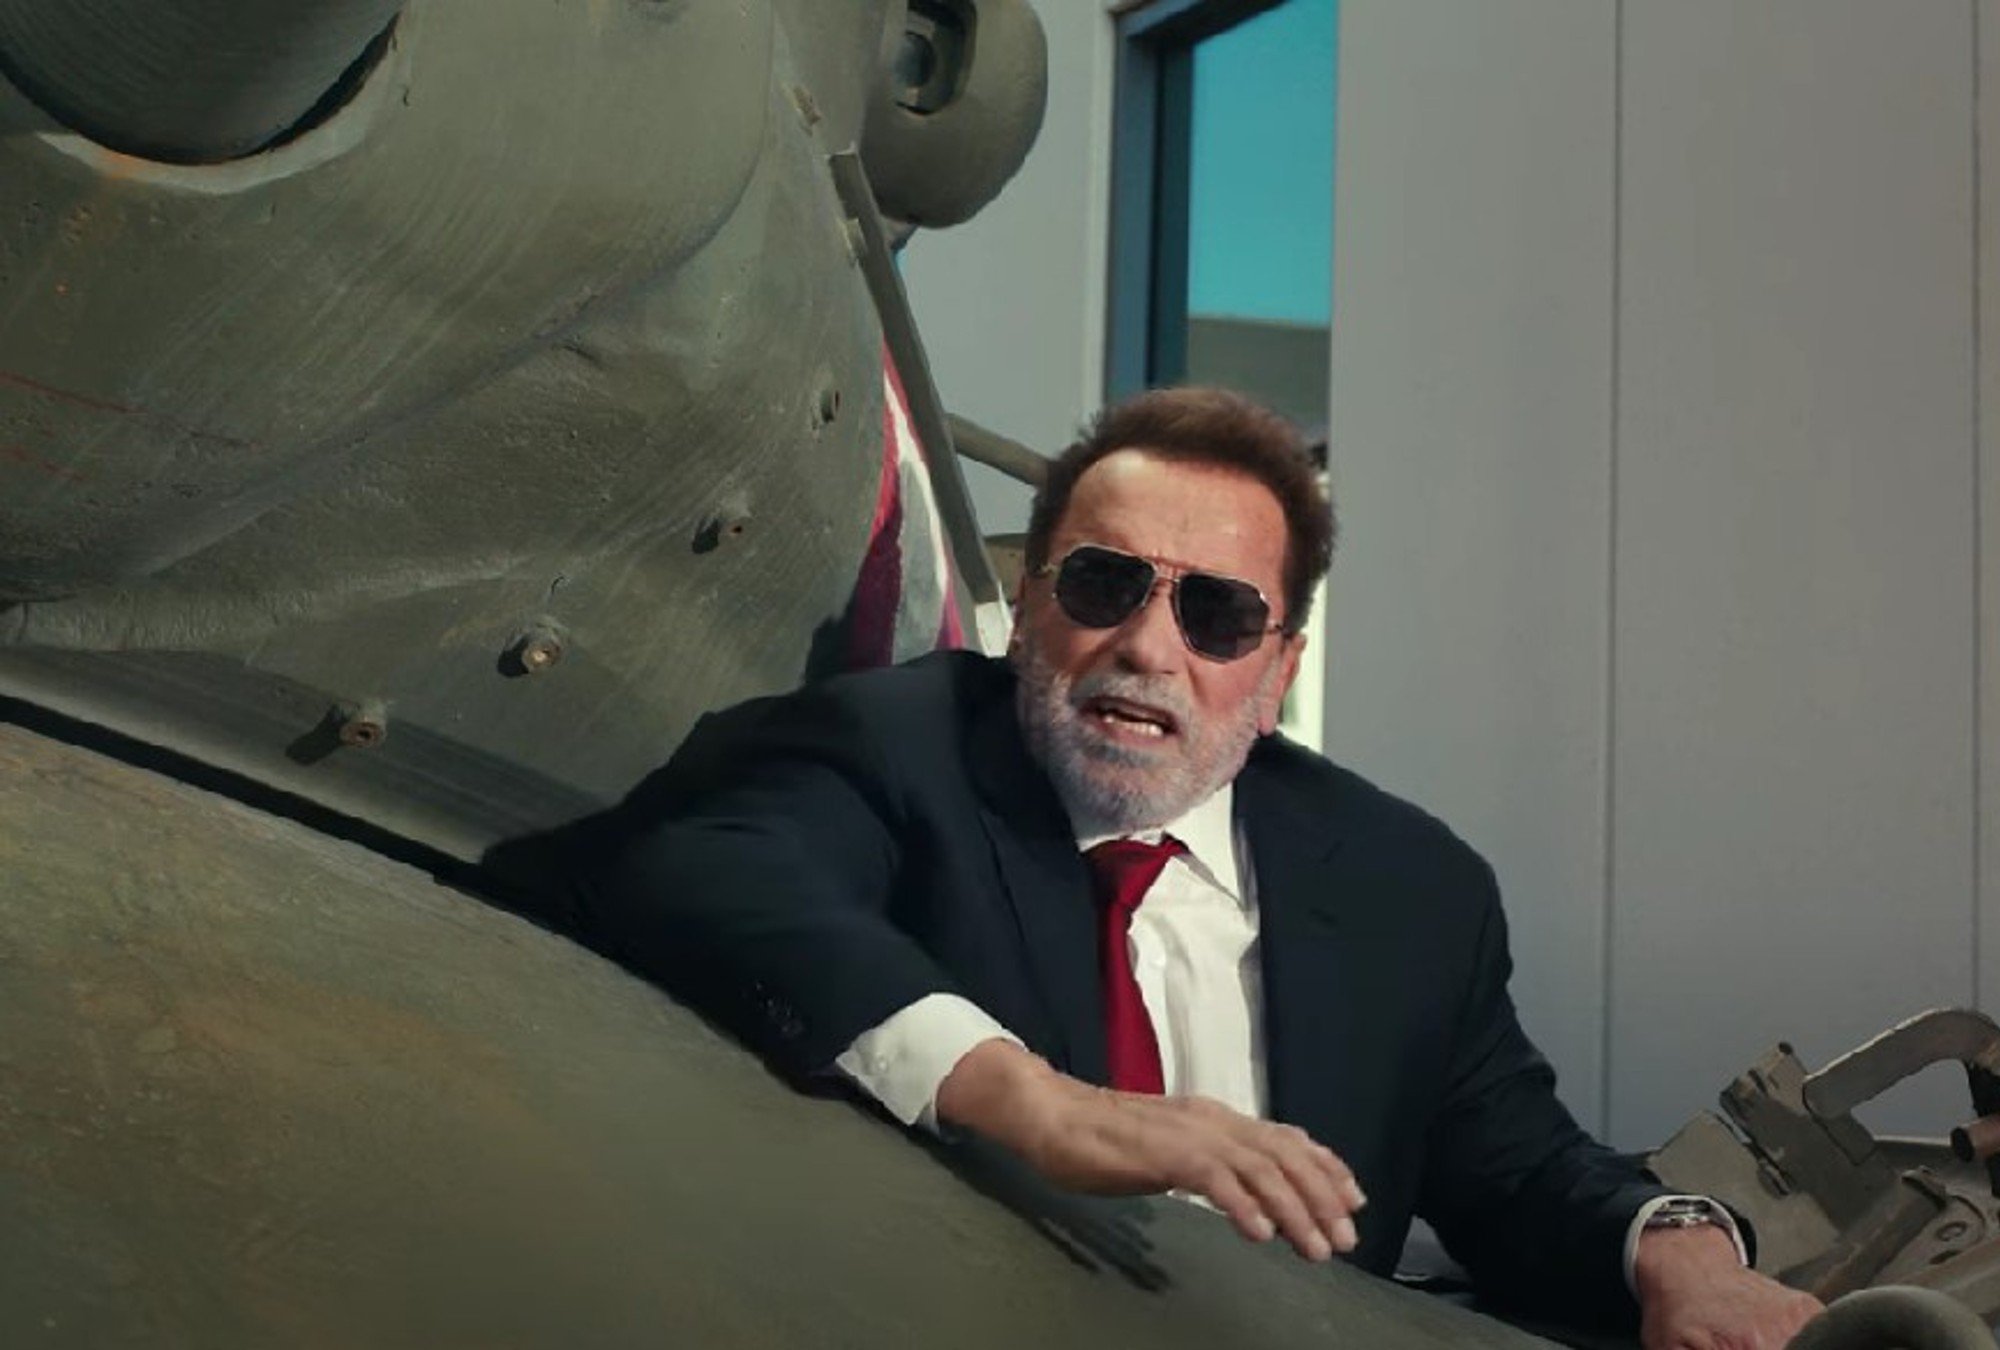 “Fubar” con Arnold Schwarzenegger se estrena el 25 de mayo.